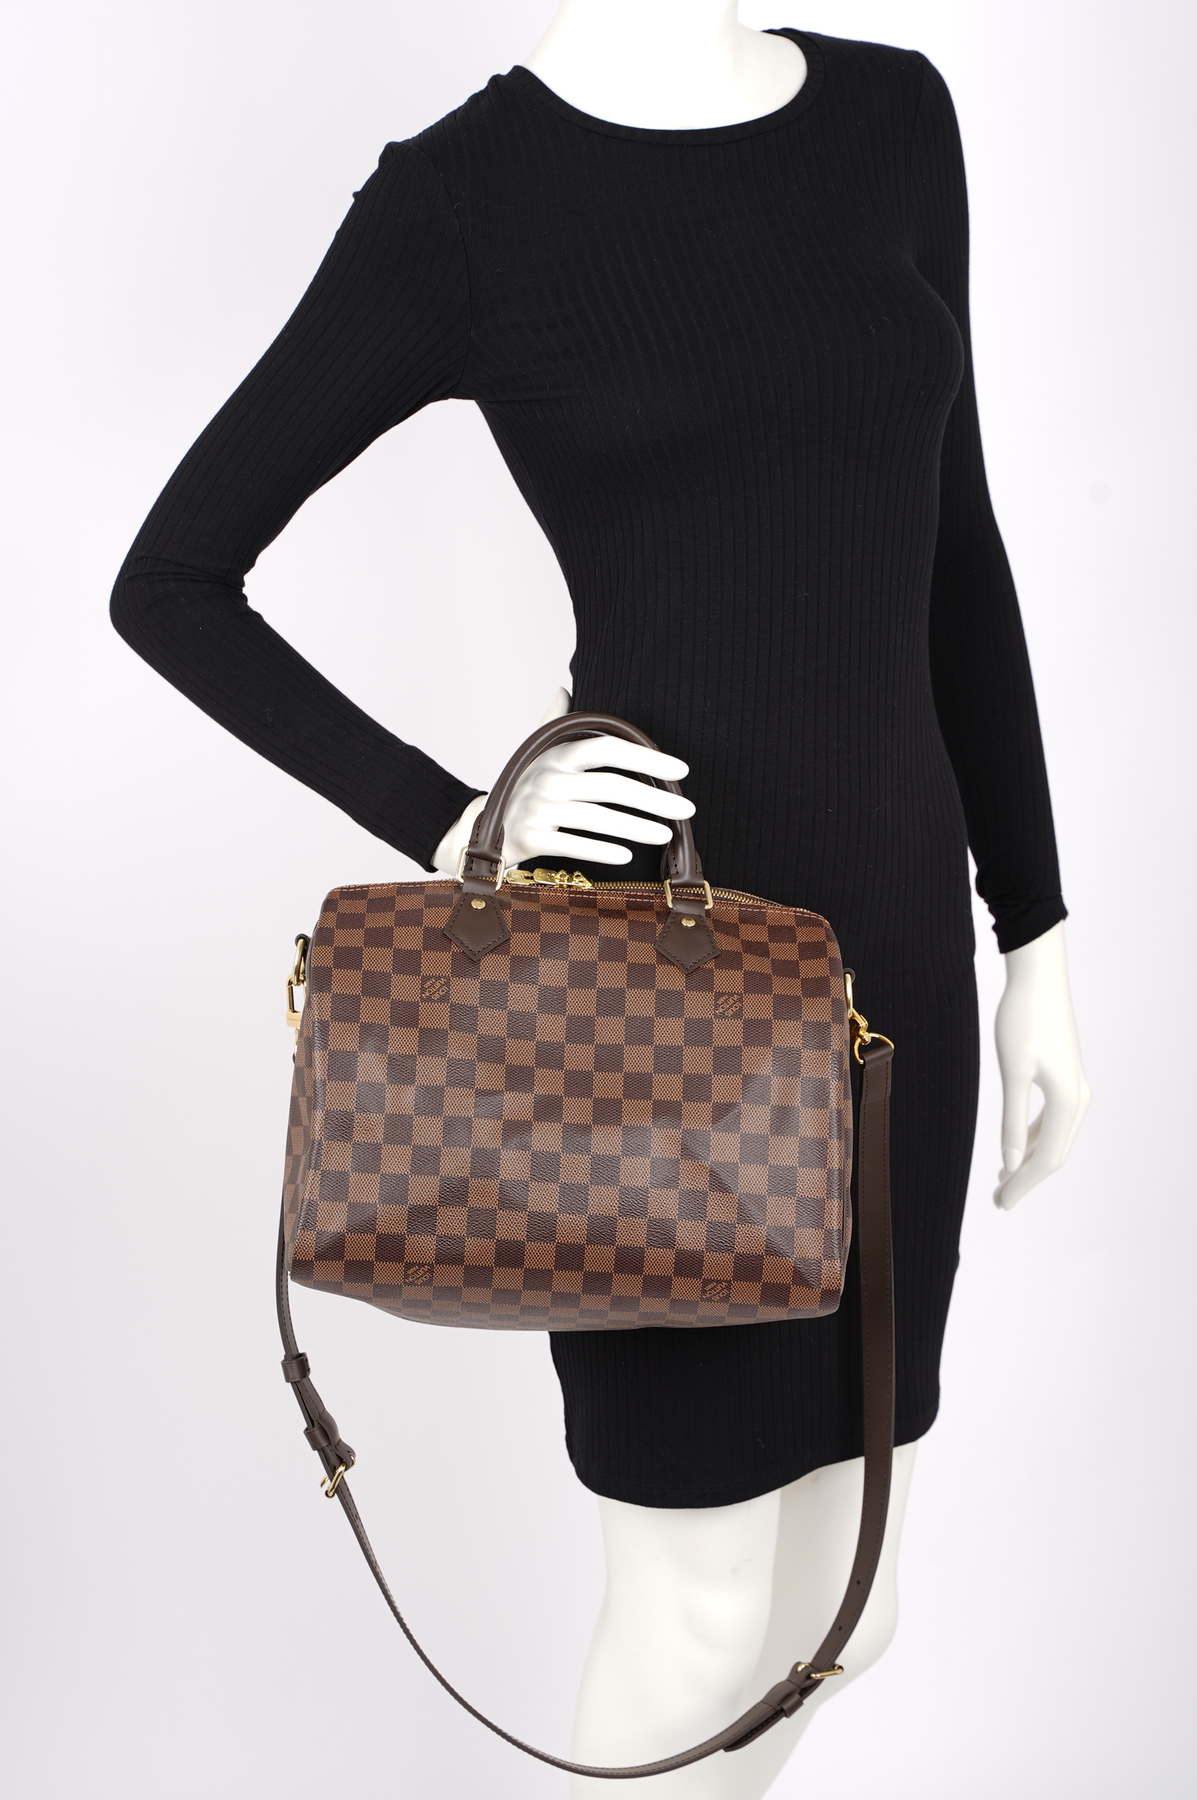 Louis Vuitton Speedy Bag Damier Ebene 30 – Luxe Collective